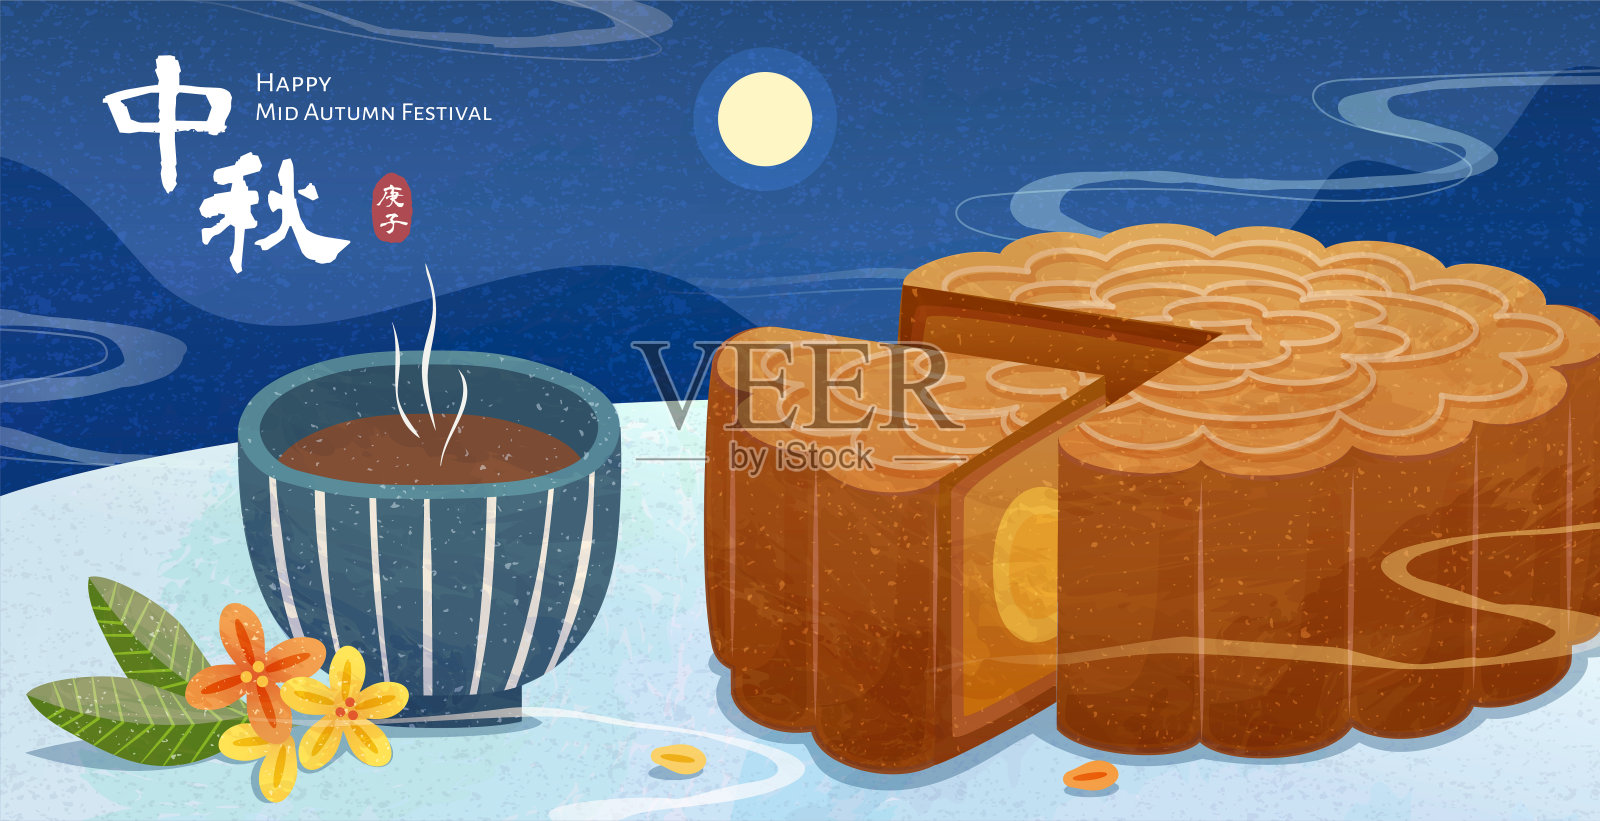 中秋美味月饼及热茶横幅插图设计模板素材